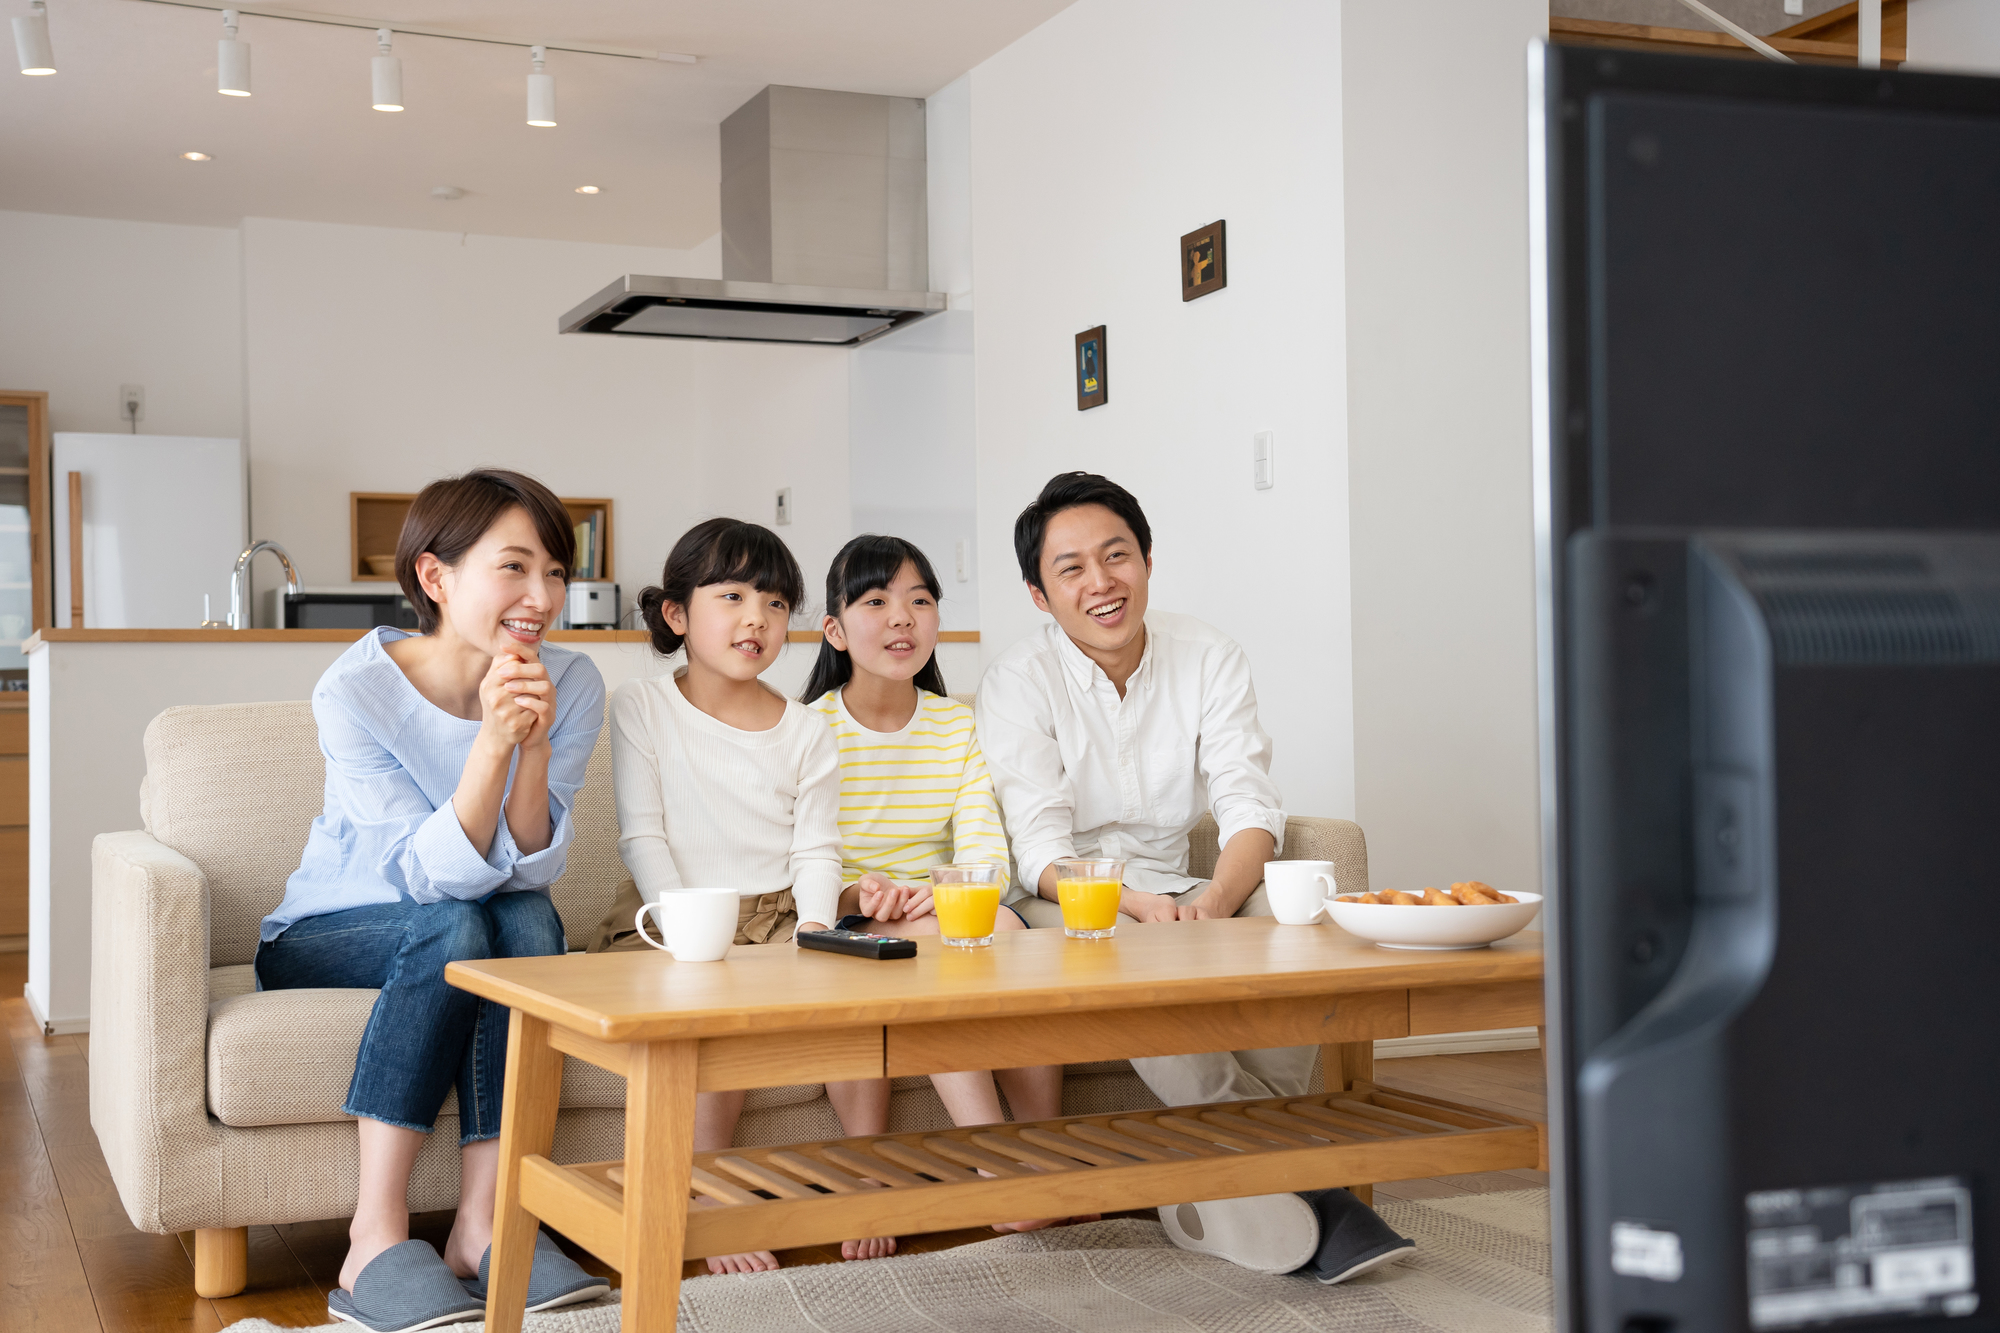 일본에서 인기 있는 동영상 스트리밍 플랫폼과 콘텐츠는 무엇일까? - tsunagu Local